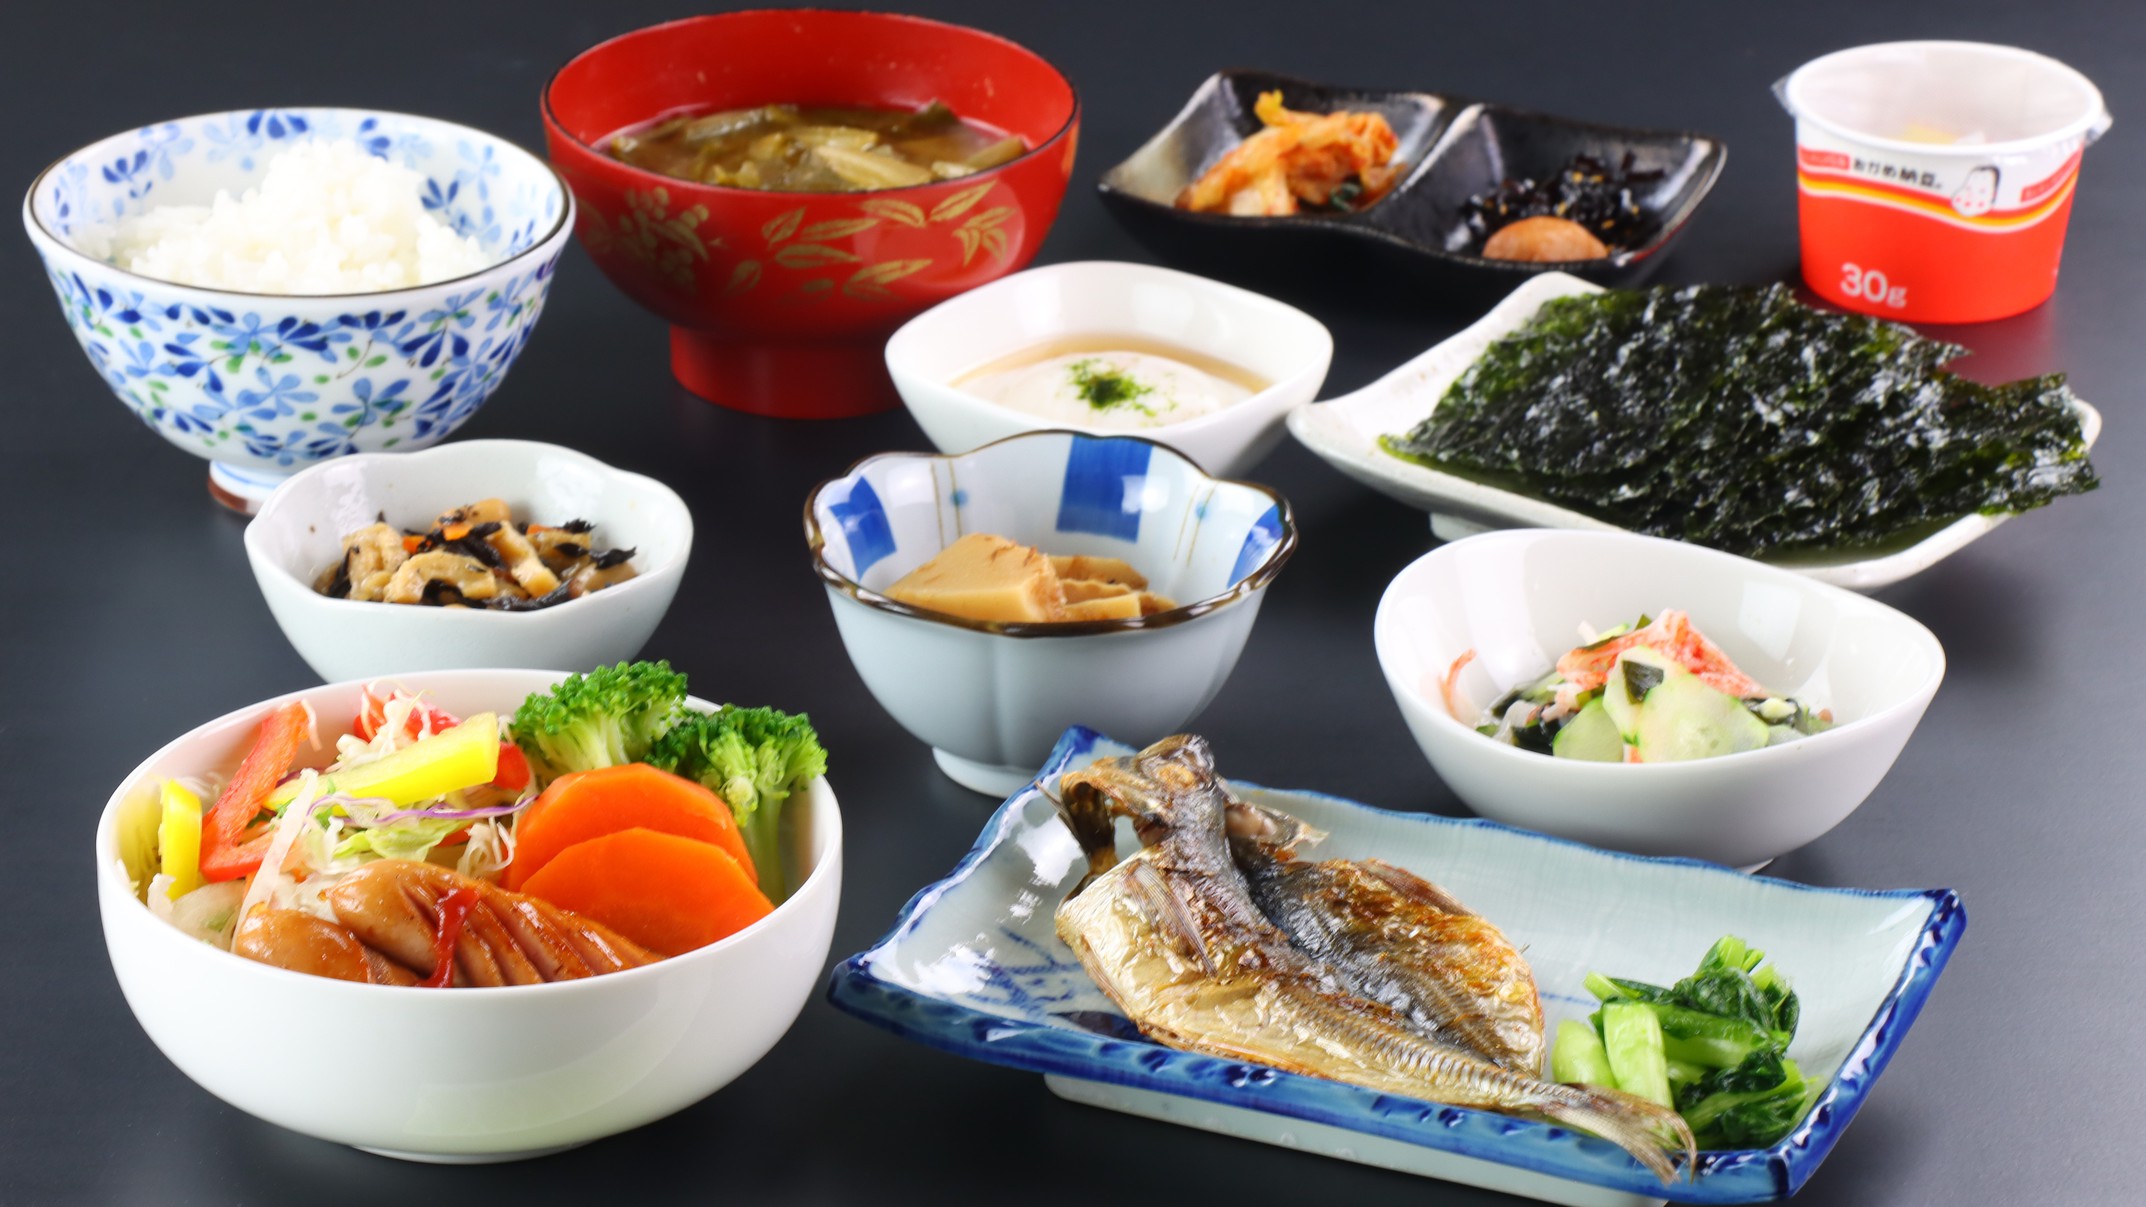 【朝食付】採れたて新鮮★お野菜を使った韓国の家庭料理をどうぞ♪